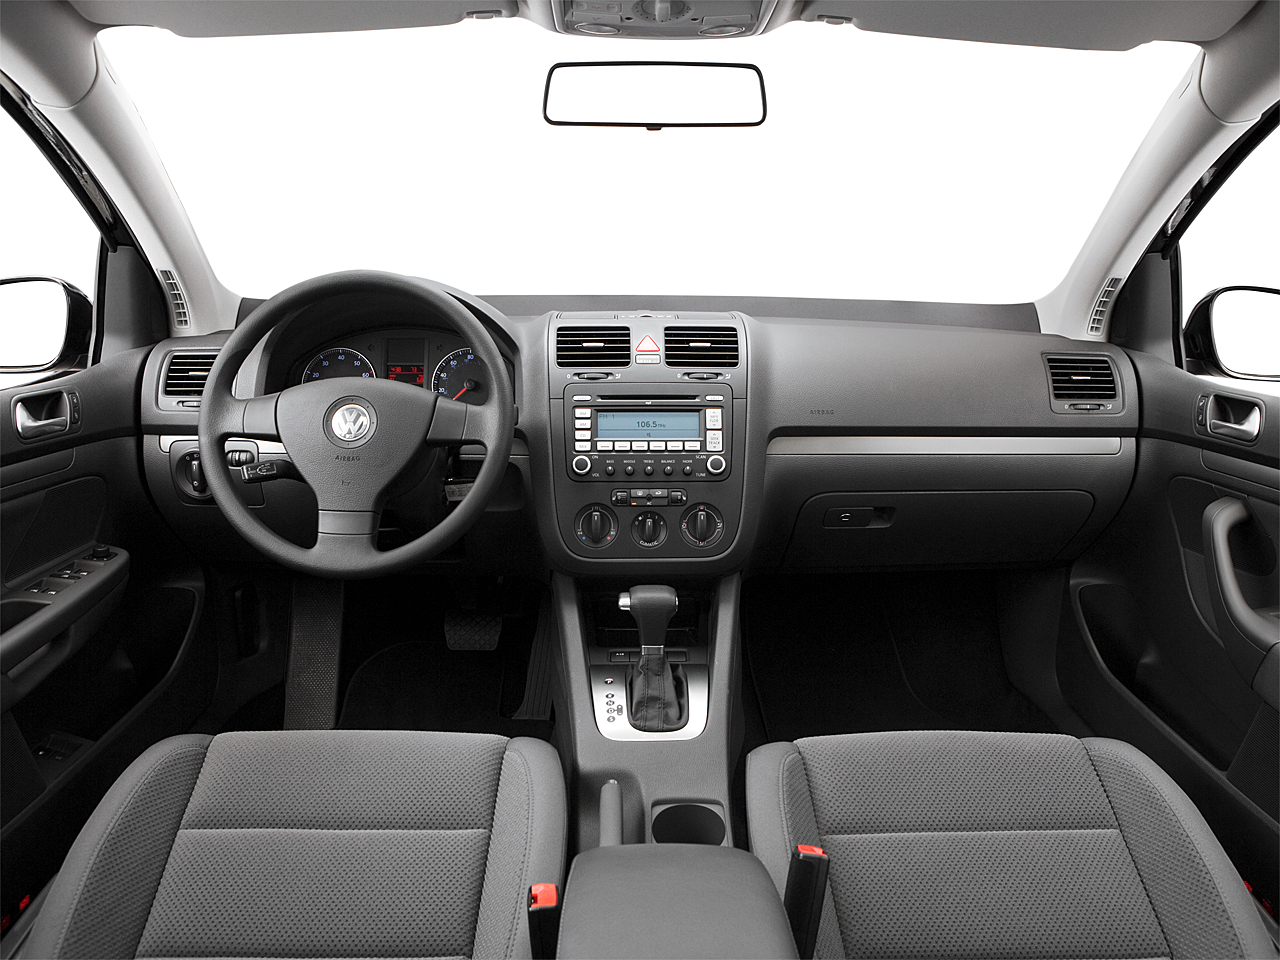 2007 Volkswagen Rabbit 4dr Hatchback (2.5L I5 5M) - Research - GrooveCar